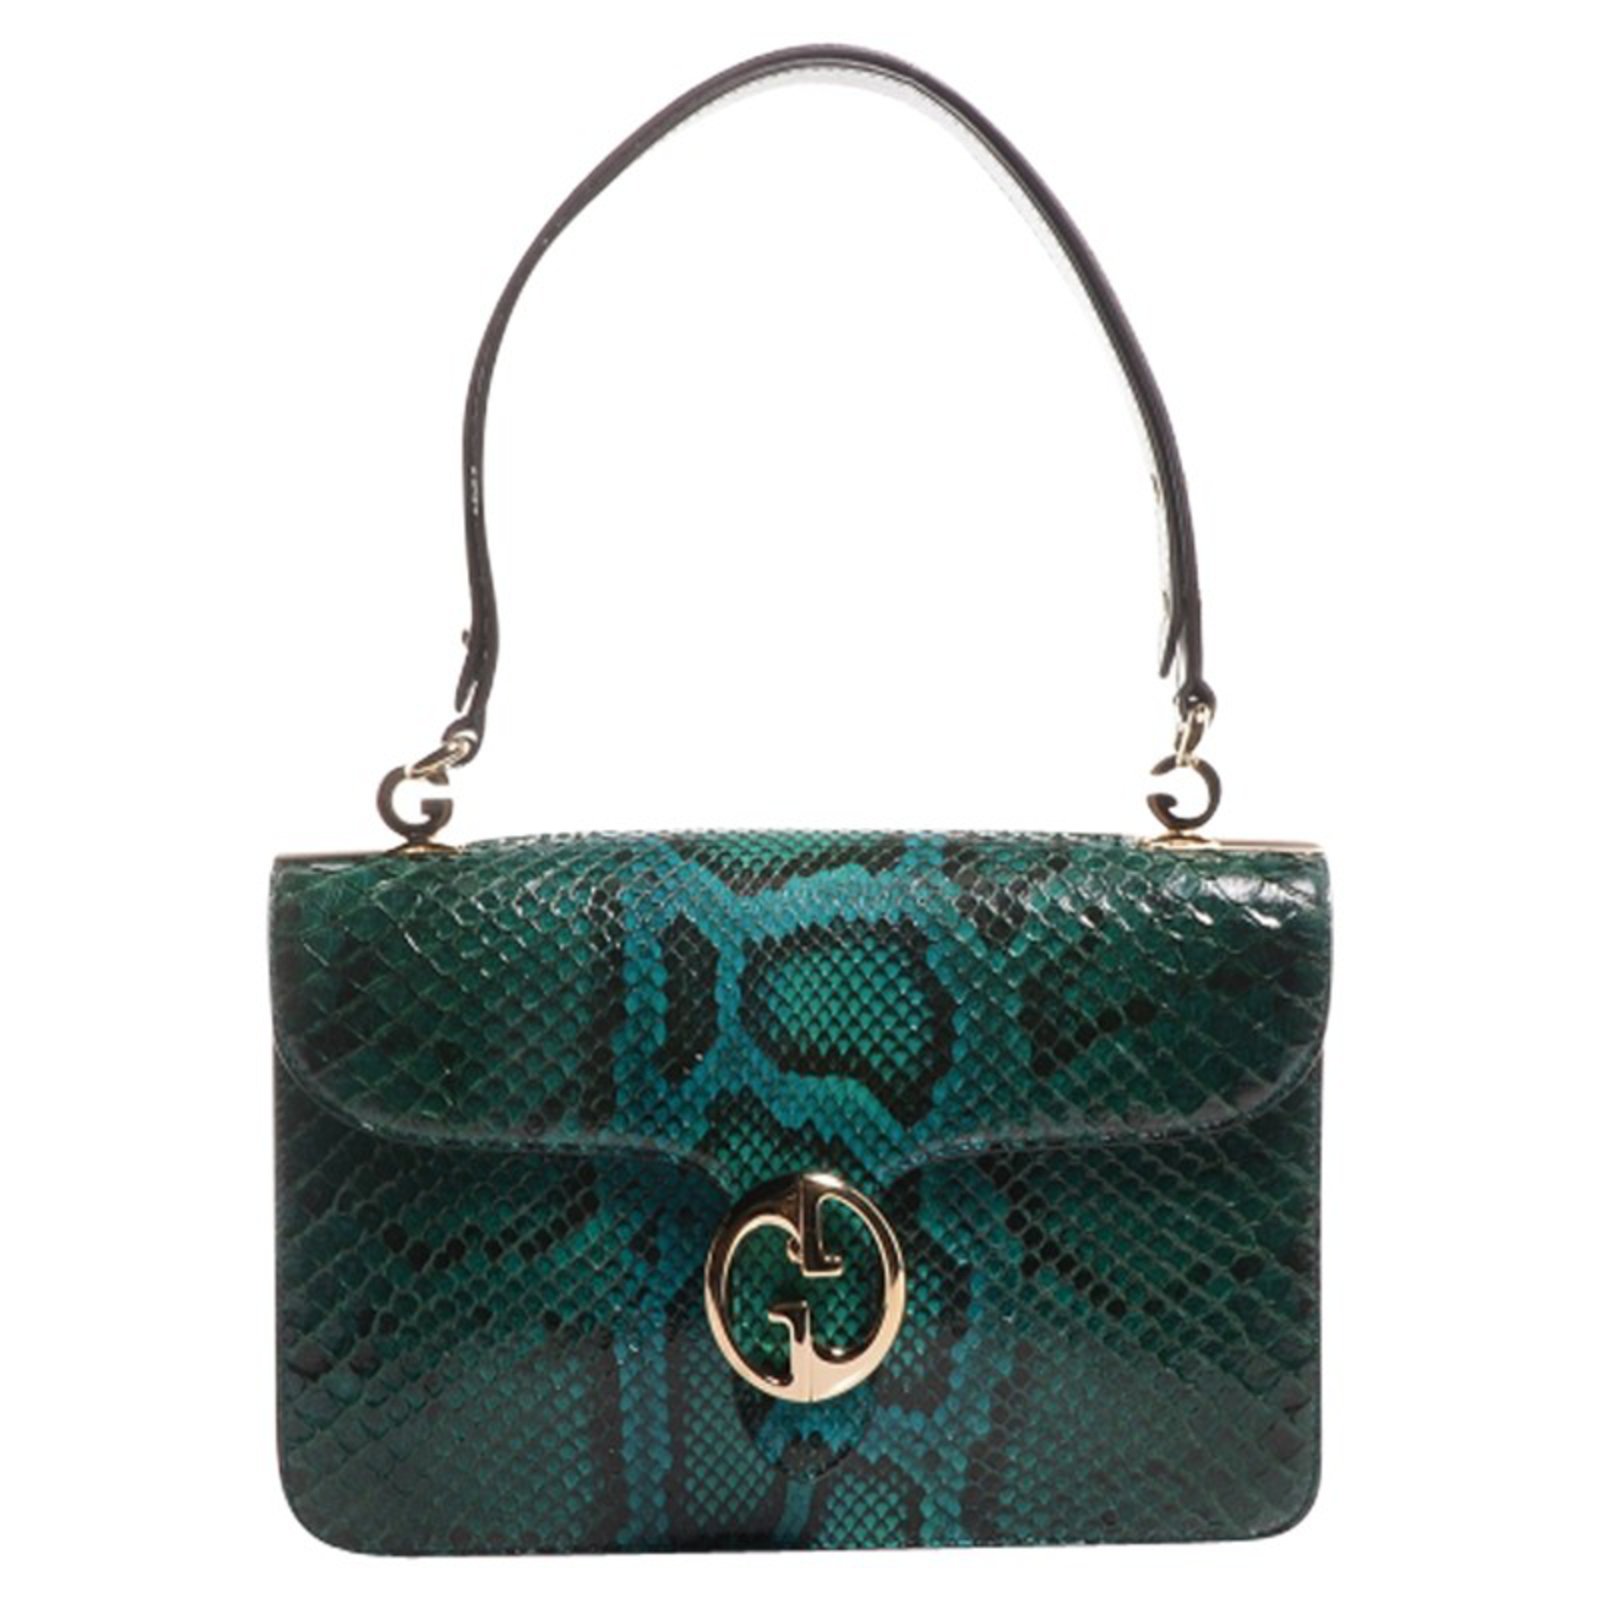 Python handbag Miu Miu Green in Python - 17660305